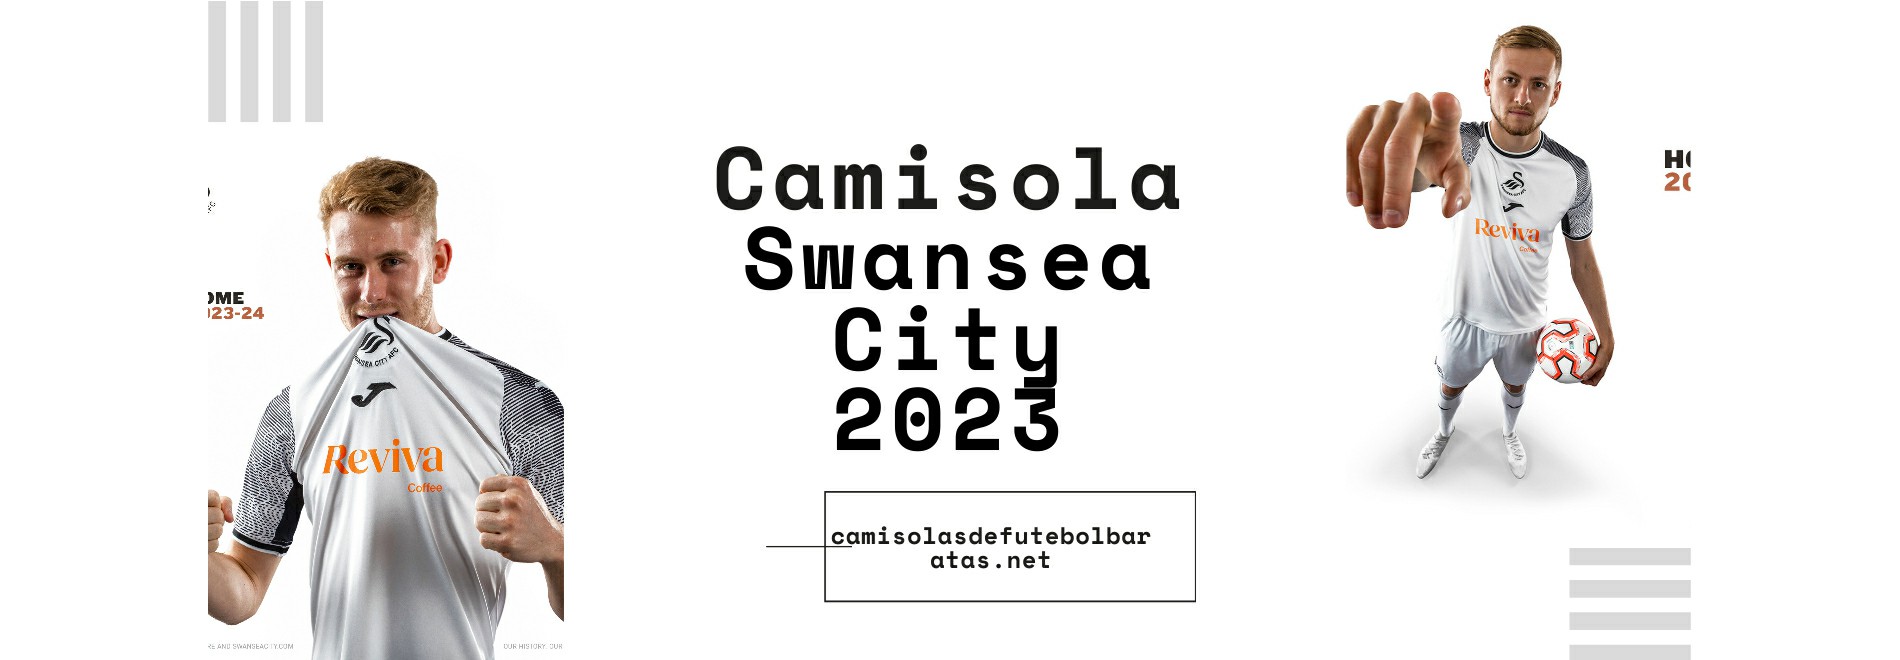 Camisola Swansea City 2023-2024